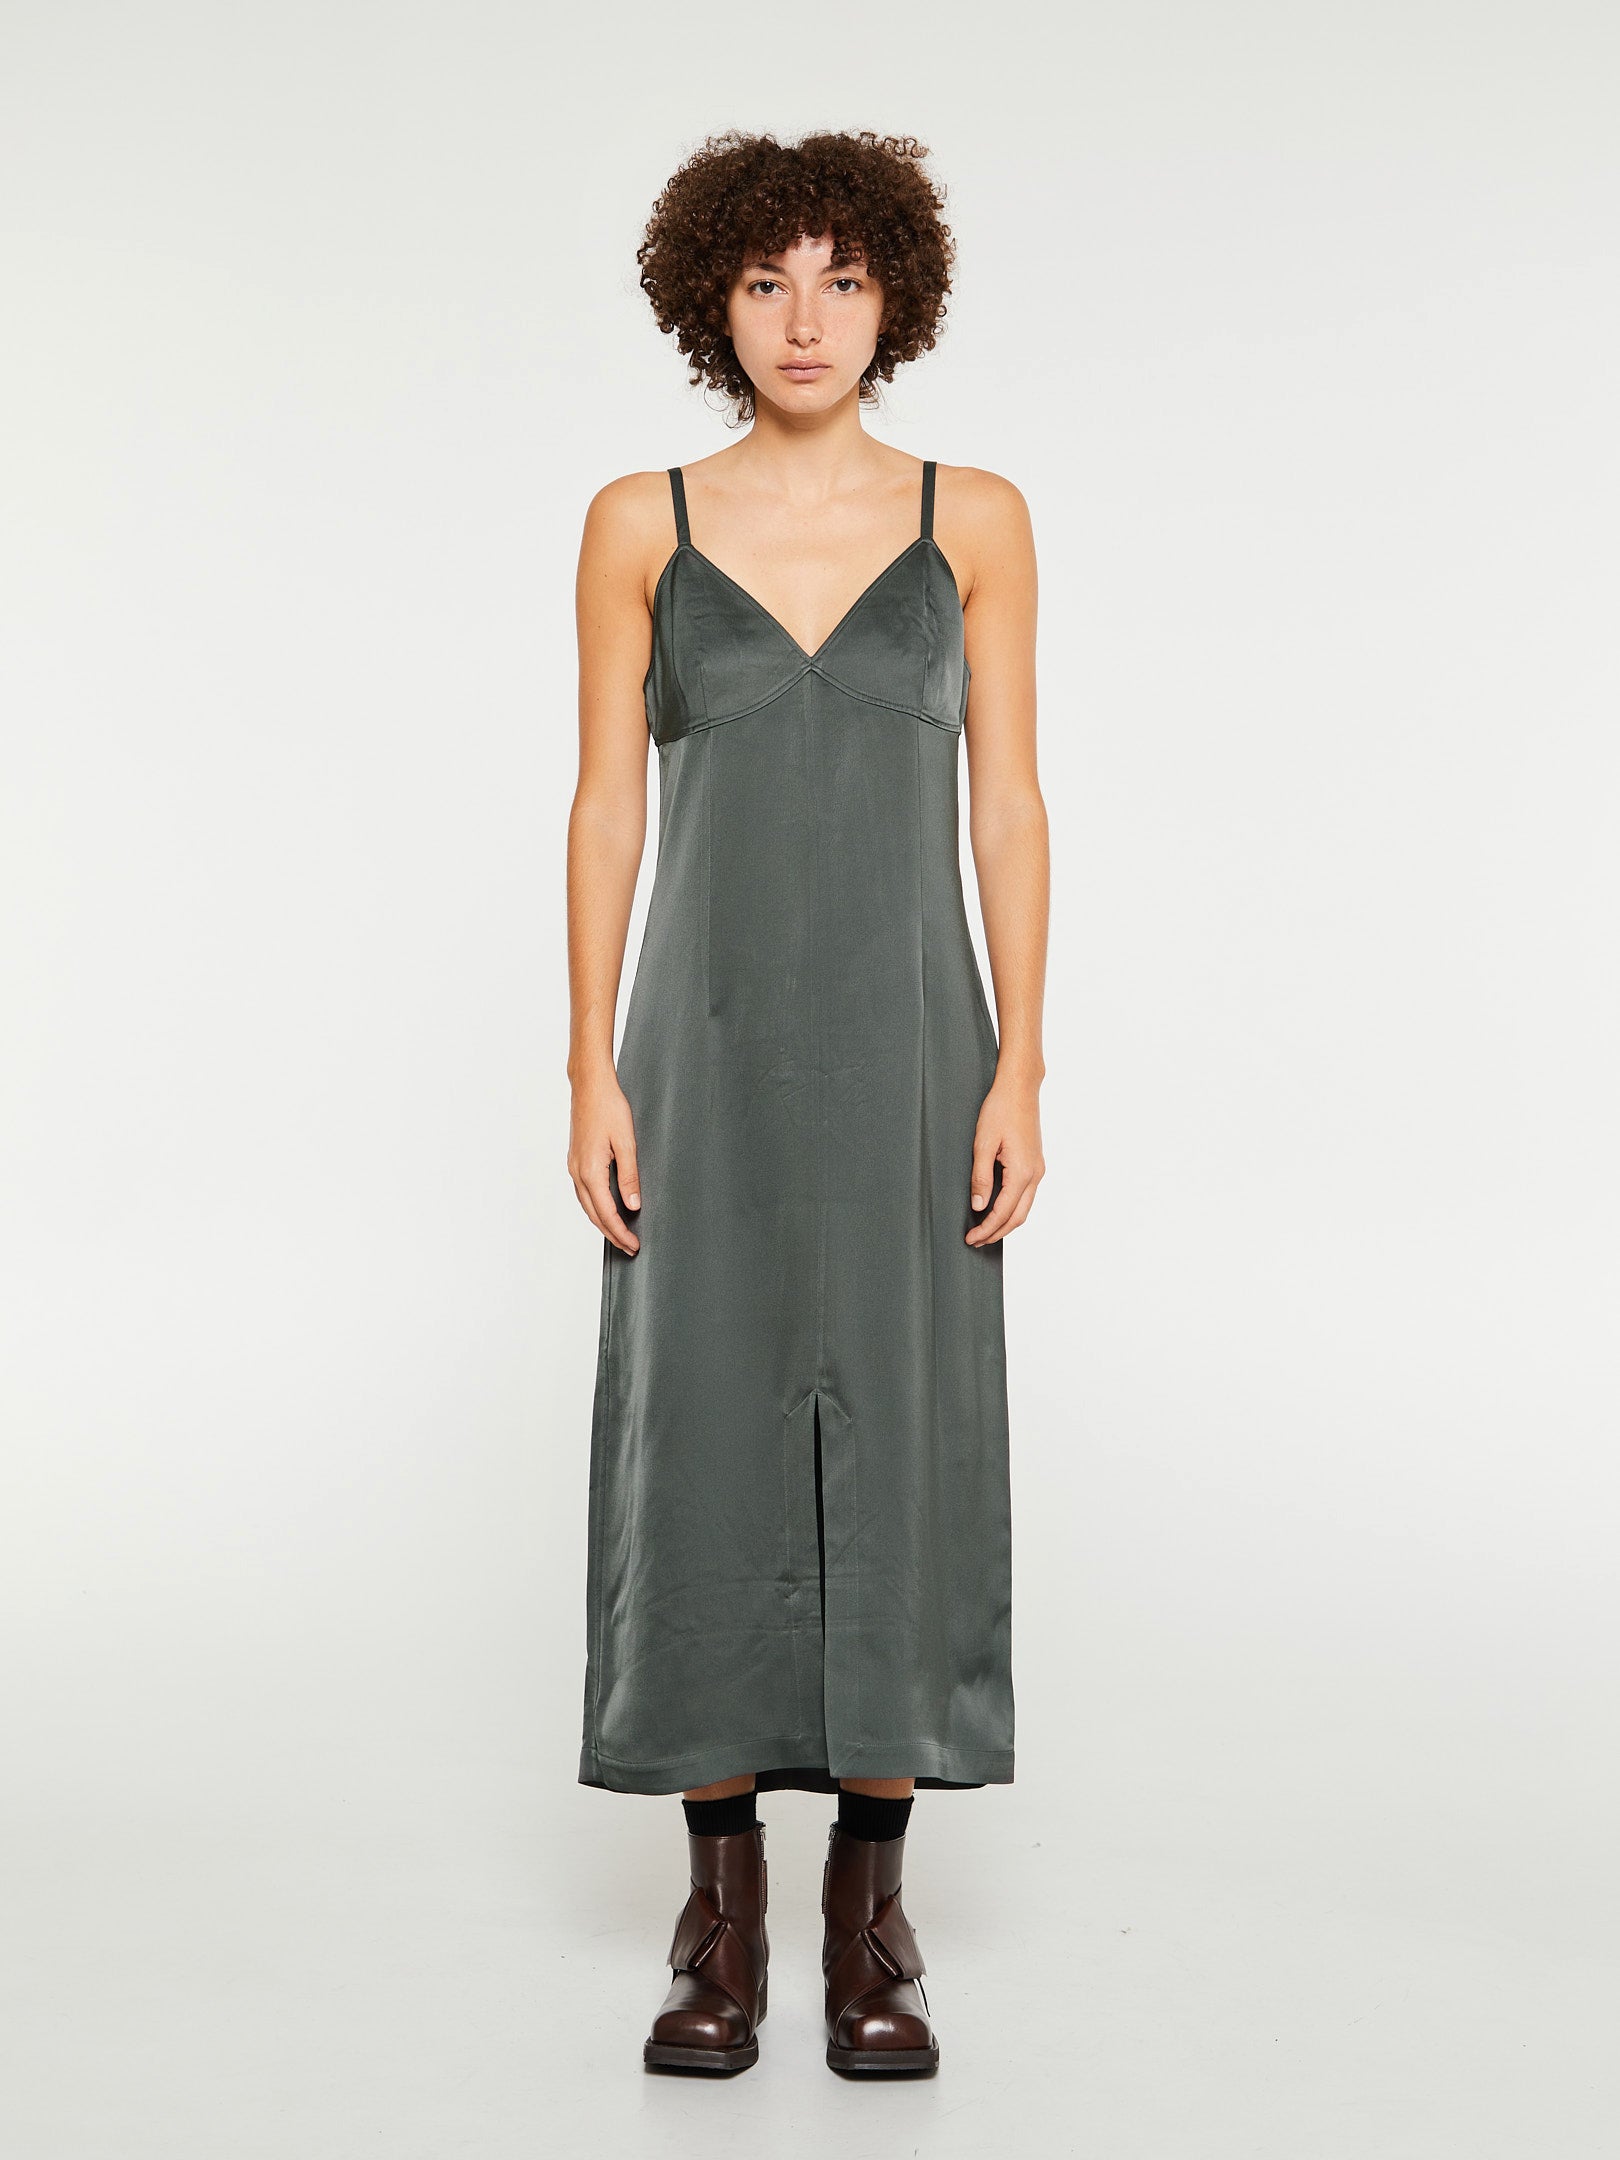 TOTEME - Front-Split Crepe Cami Dress in Lead